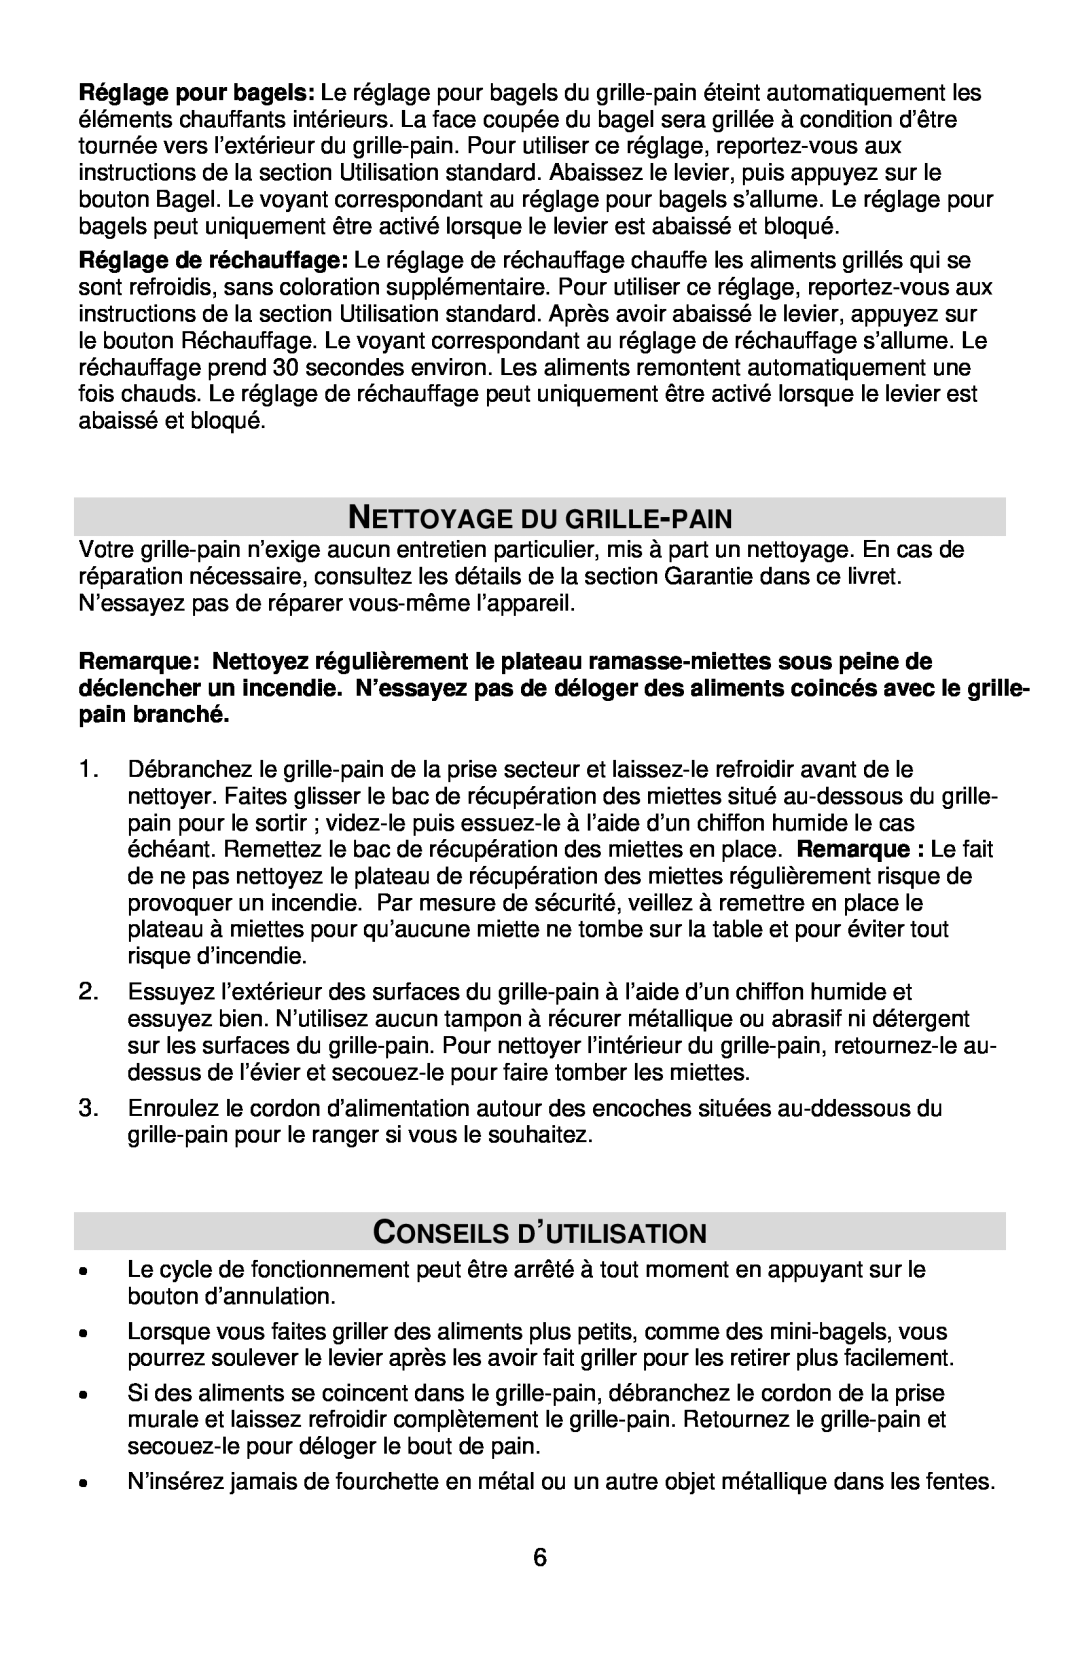 West Bend L5559C instruction manual Nettoyage Du Grille-Pain, Conseils D’Utilisation 